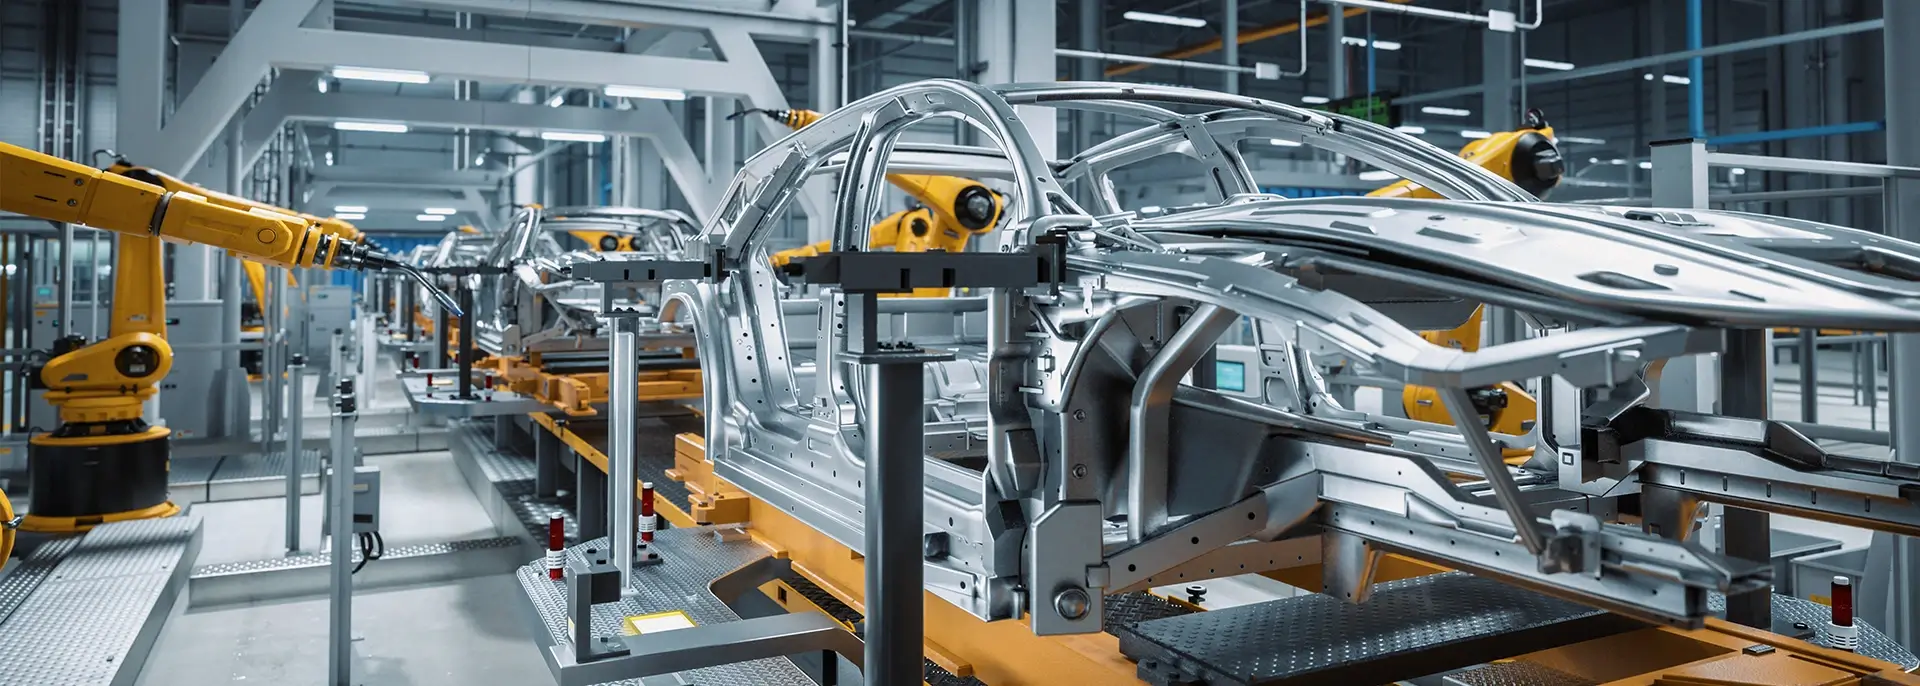 Machine building a car in a factory